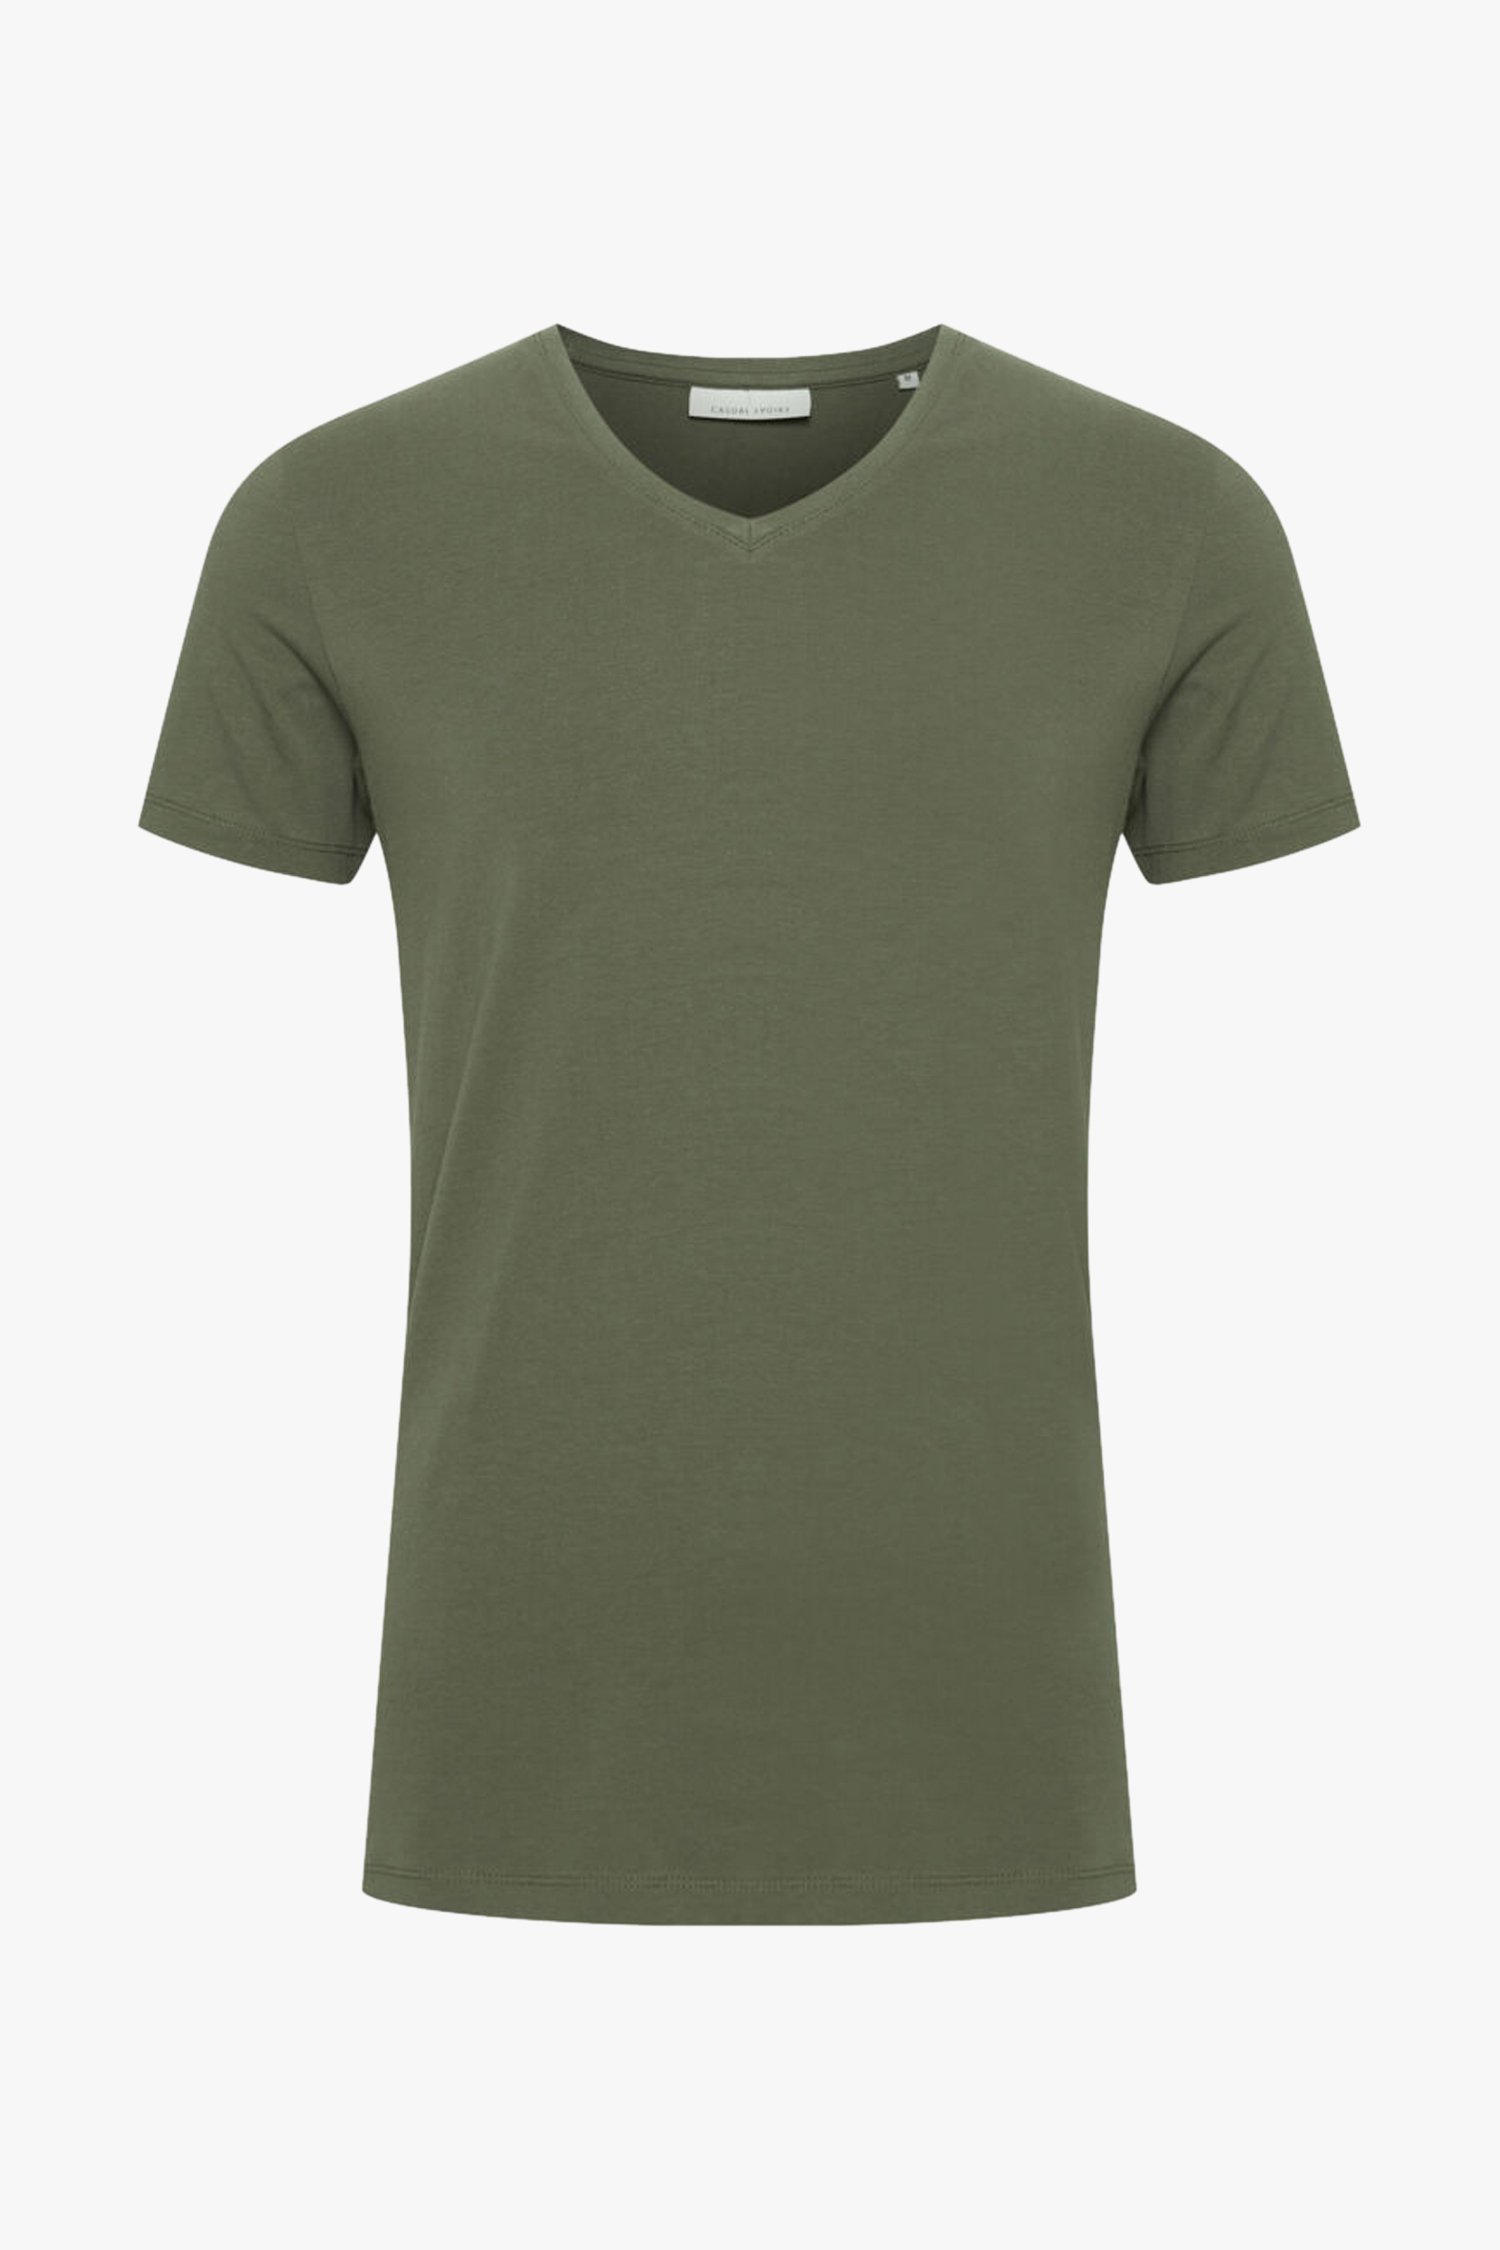 T-shirt vert olive à col en V de Casual Friday pour Hommes